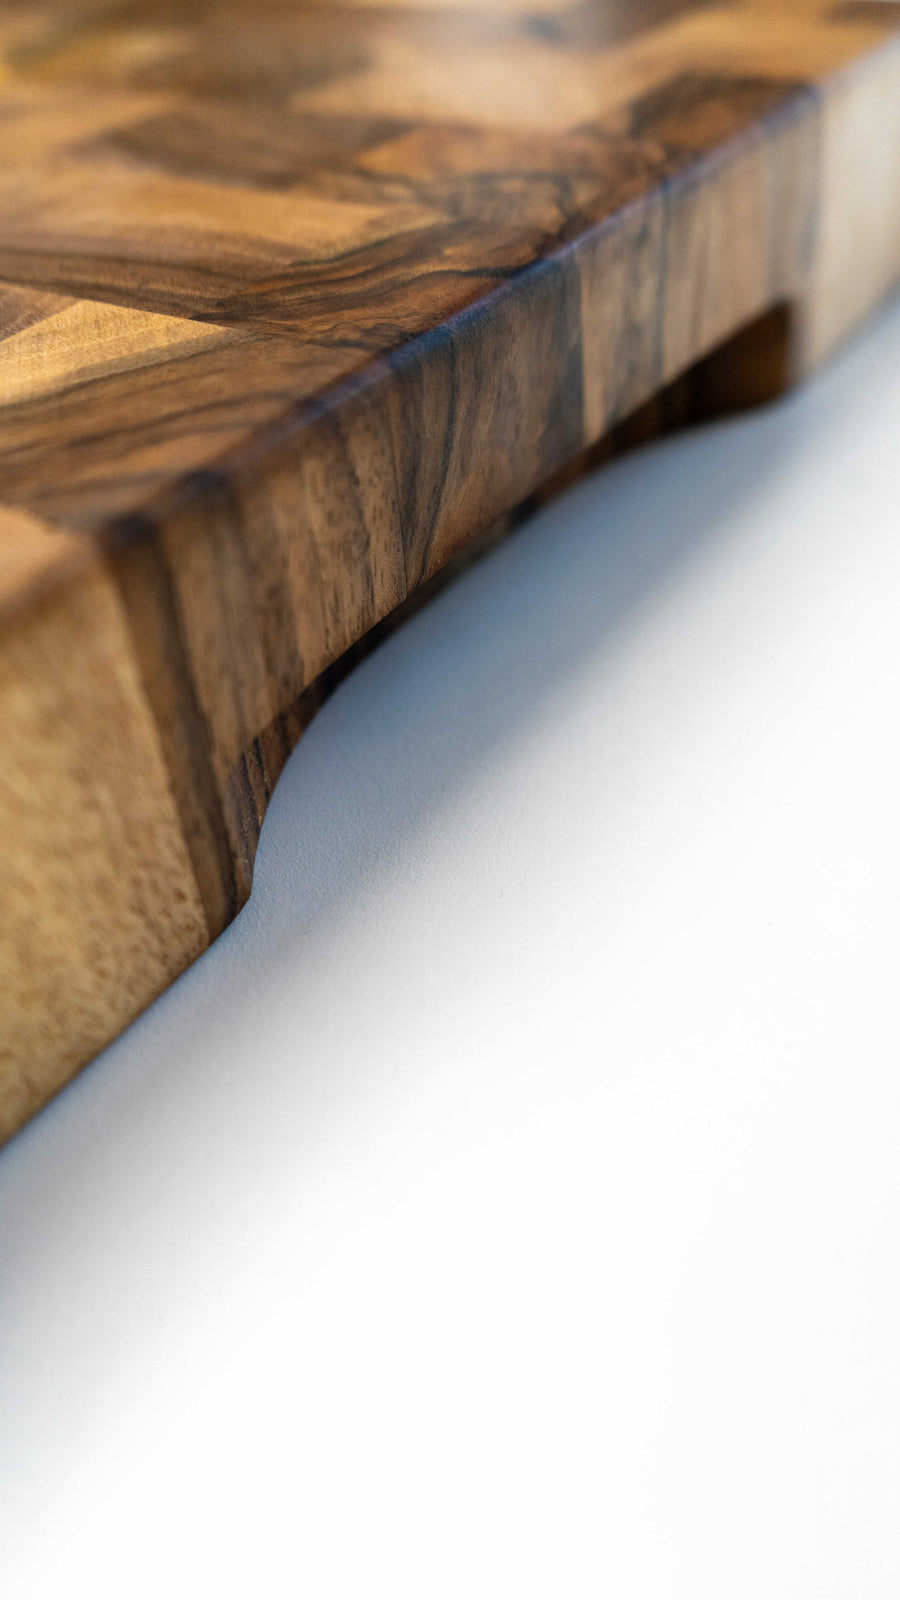 Ročno izdelana kuhinjska deska za rezanje je narejena iz orehovega lesa. Posebnost te deske je, da je sestavljena tako, da so vlakna lesa obrnjena navzgor in zato nudi boljše pogoje za rezanje, saj takšna podlaga manj poškoduje rezalno površino noža. V kompletu z desko je tudi olje za nego in zaščito lesenih površin. Na sliki: Rob rezalne deske, prilagojen za oprijem z dlanmi.